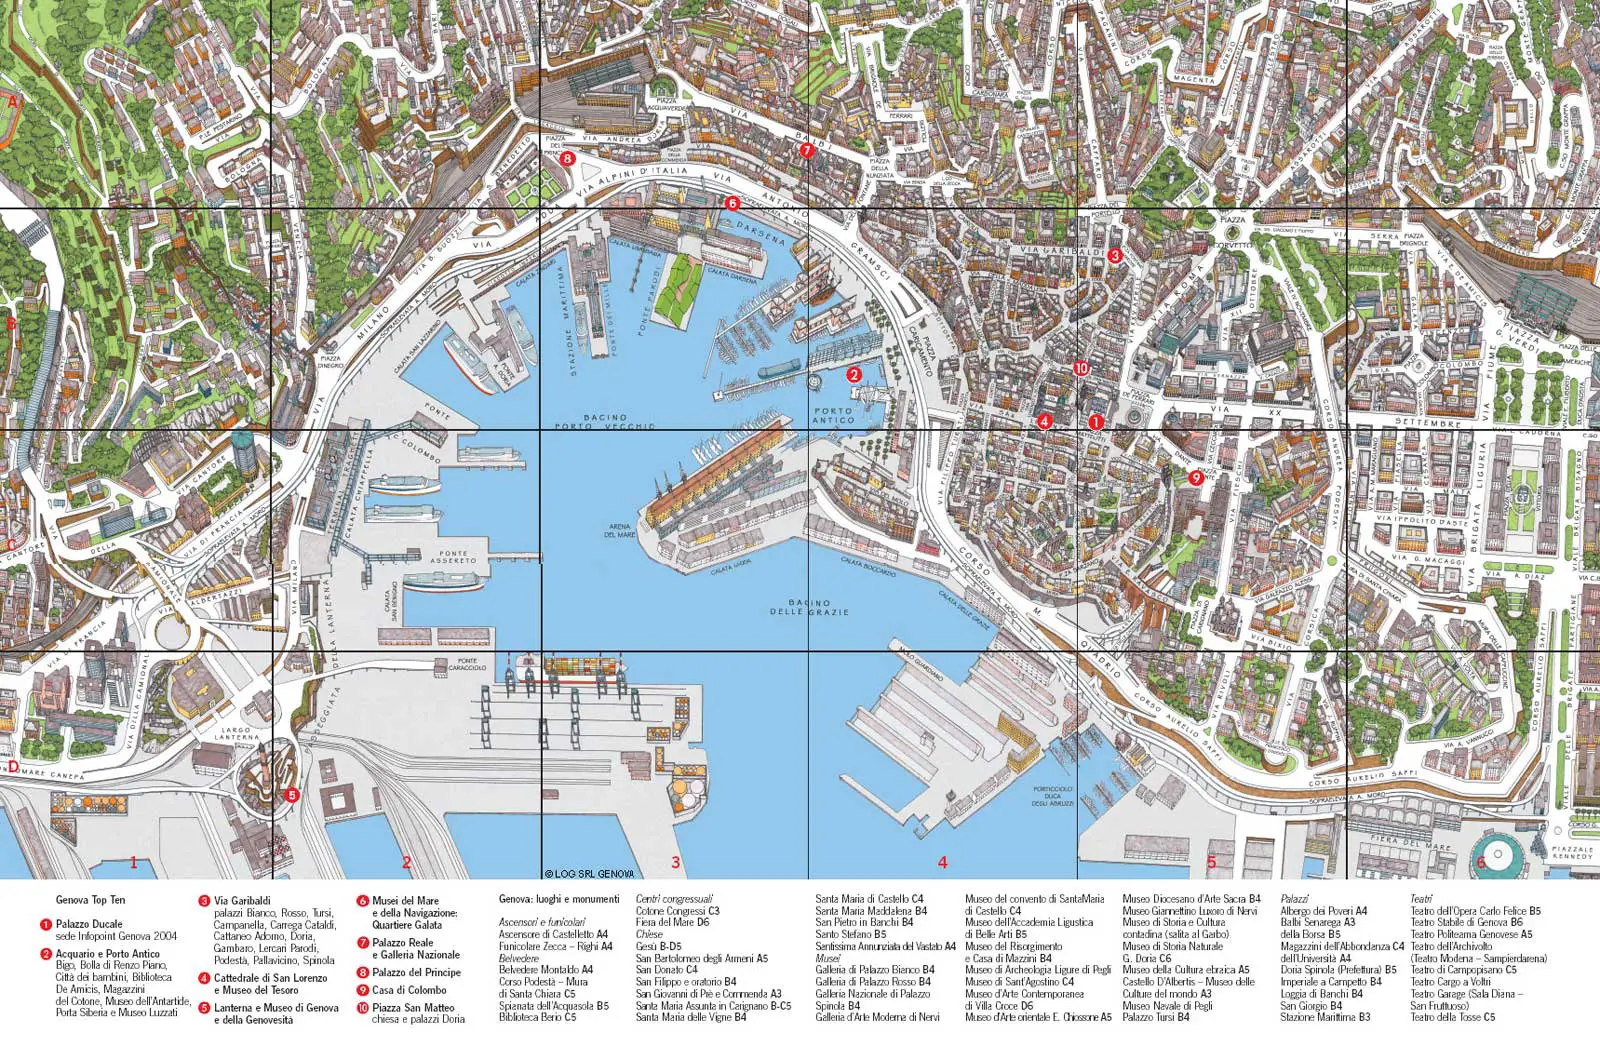 Genoa City Travel Map - Mapsof.net